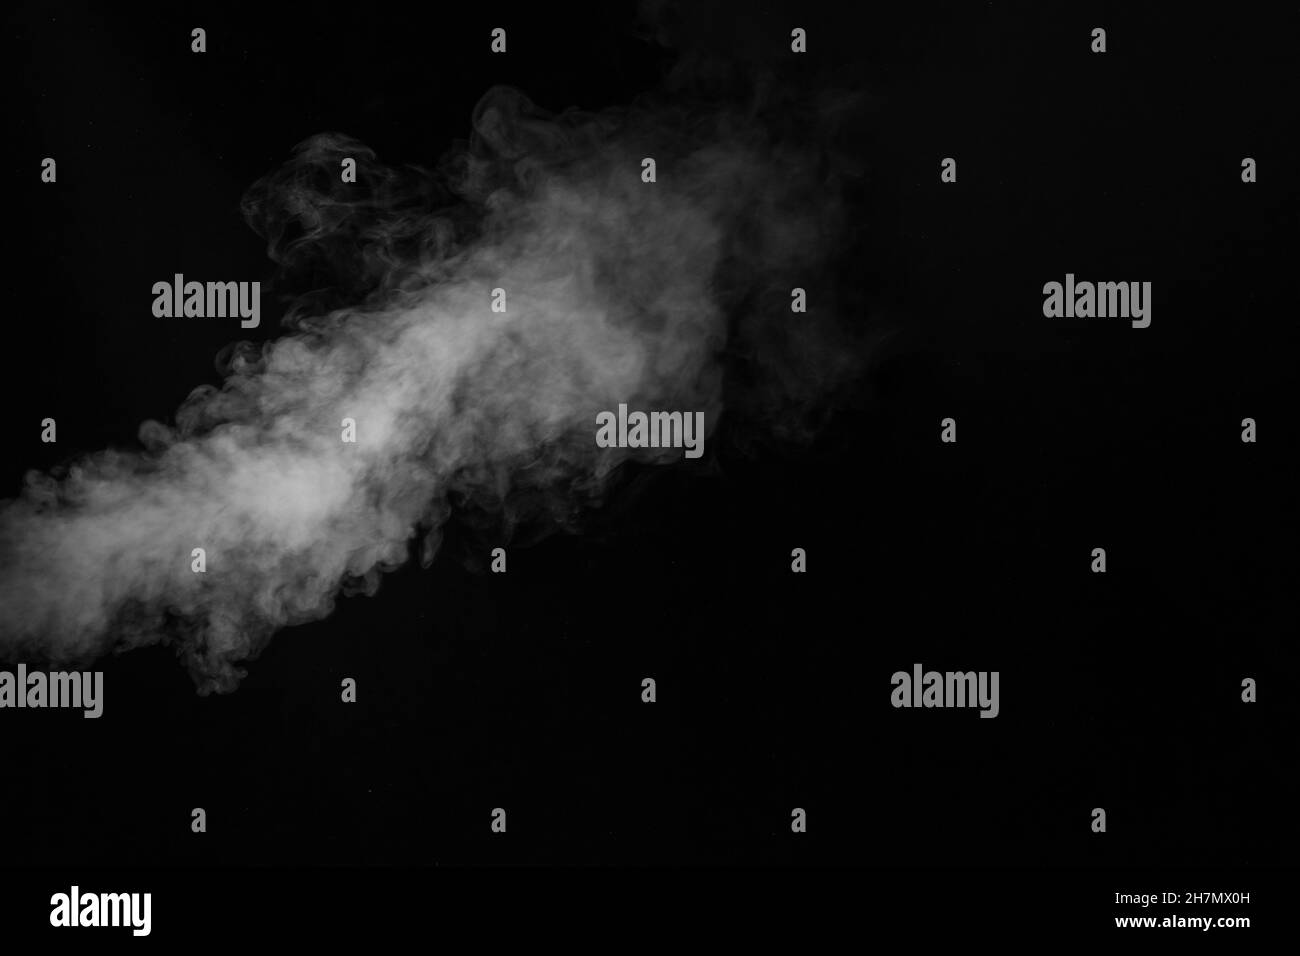 Weißer Dampfsprühdampf aus dem Luftsättigungsgerät. Rauchfragmente auf schwarzem Hintergrund. Abstrakter Hintergrund, Design-Element, für Überlagerung auf Bildern Stockfoto